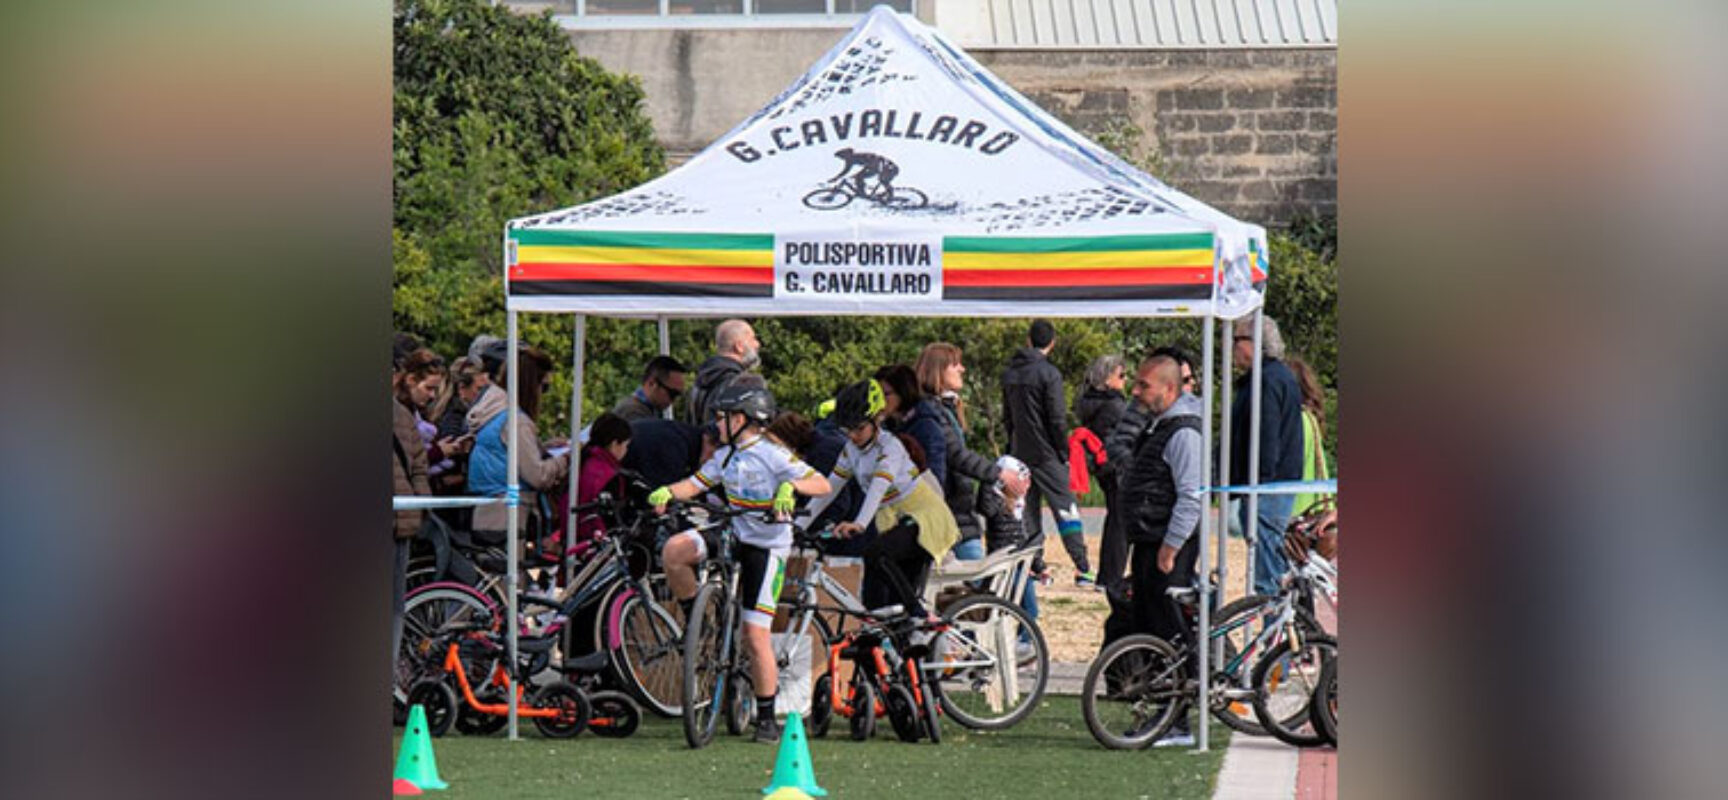 Scuola di Ciclismo Cavallaro, tutto pronto per l’evento “Bici in festa”  